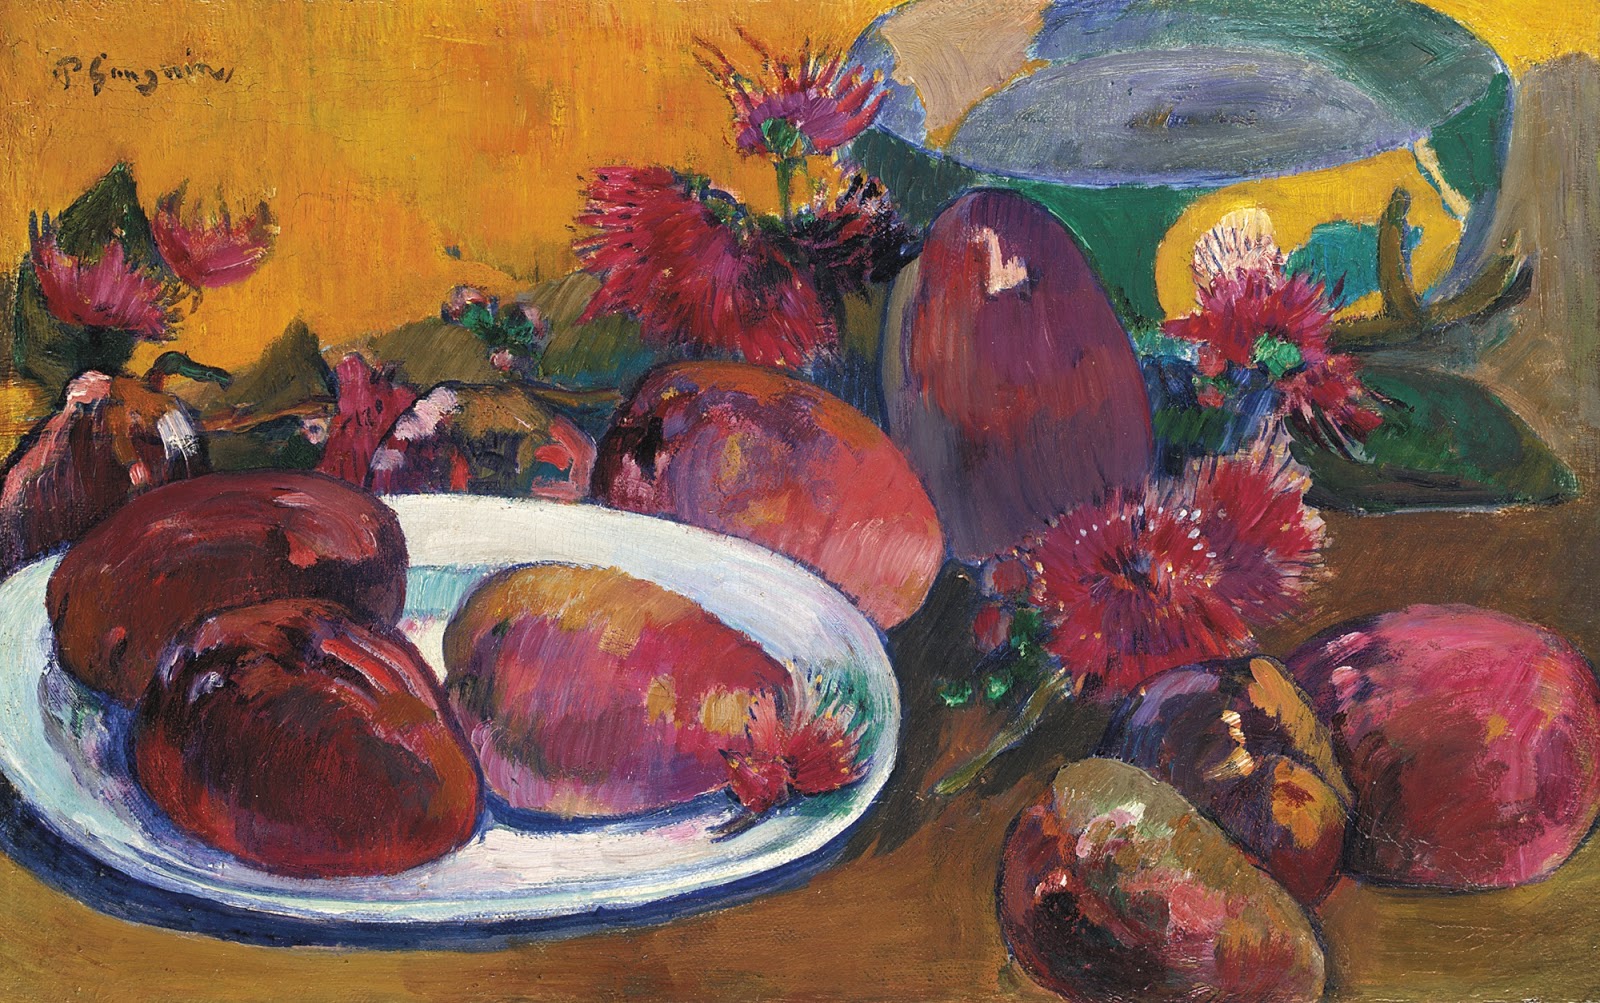 Paul+Gauguin-1848-1903 (342).jpg